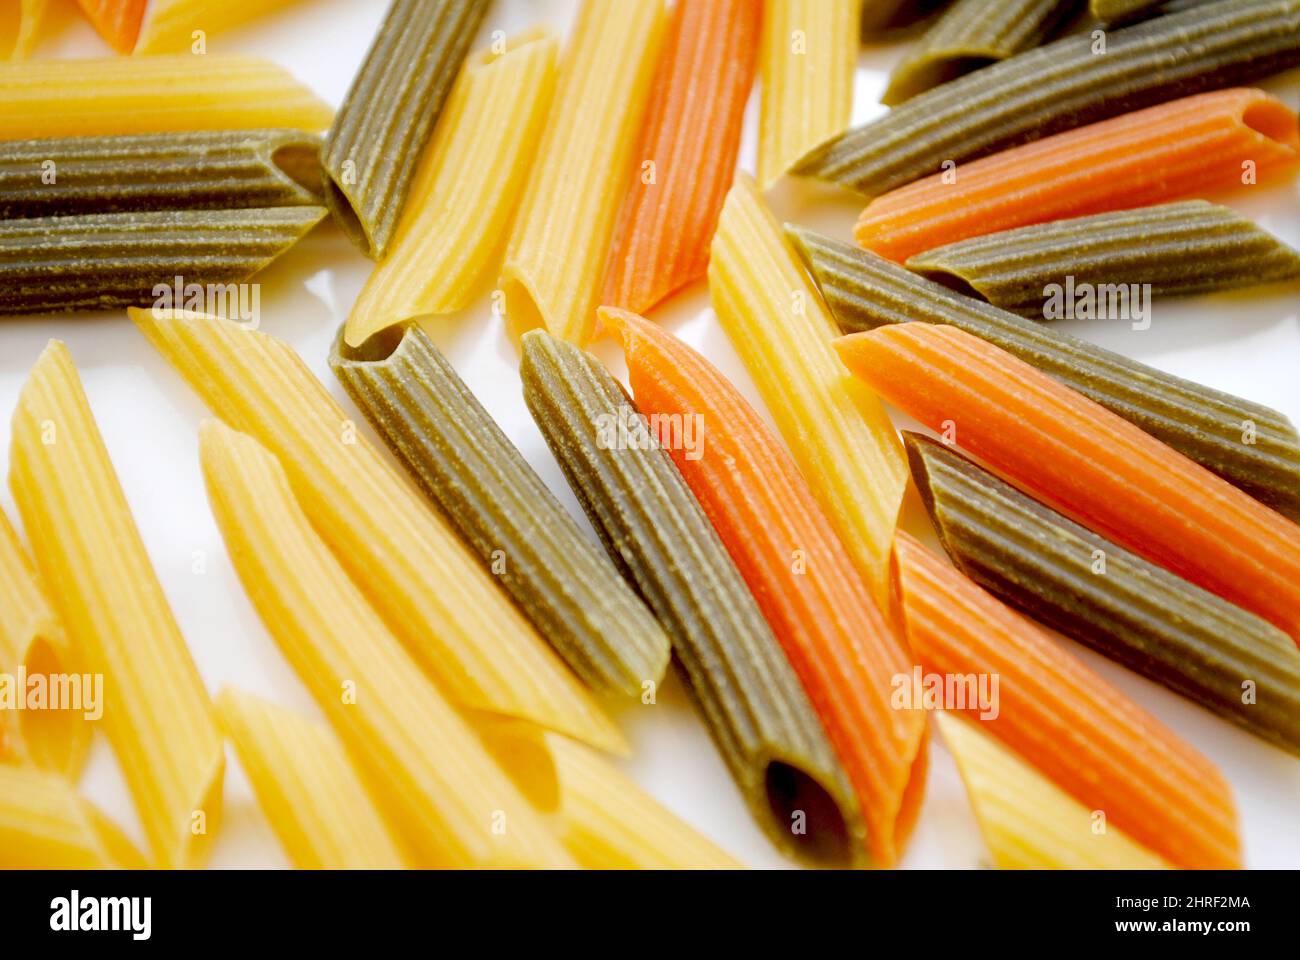 Gros plan de nouilles de pâtes Penne en forme de cylindre crues en trois couleurs jaune, vert et rouge Banque D'Images